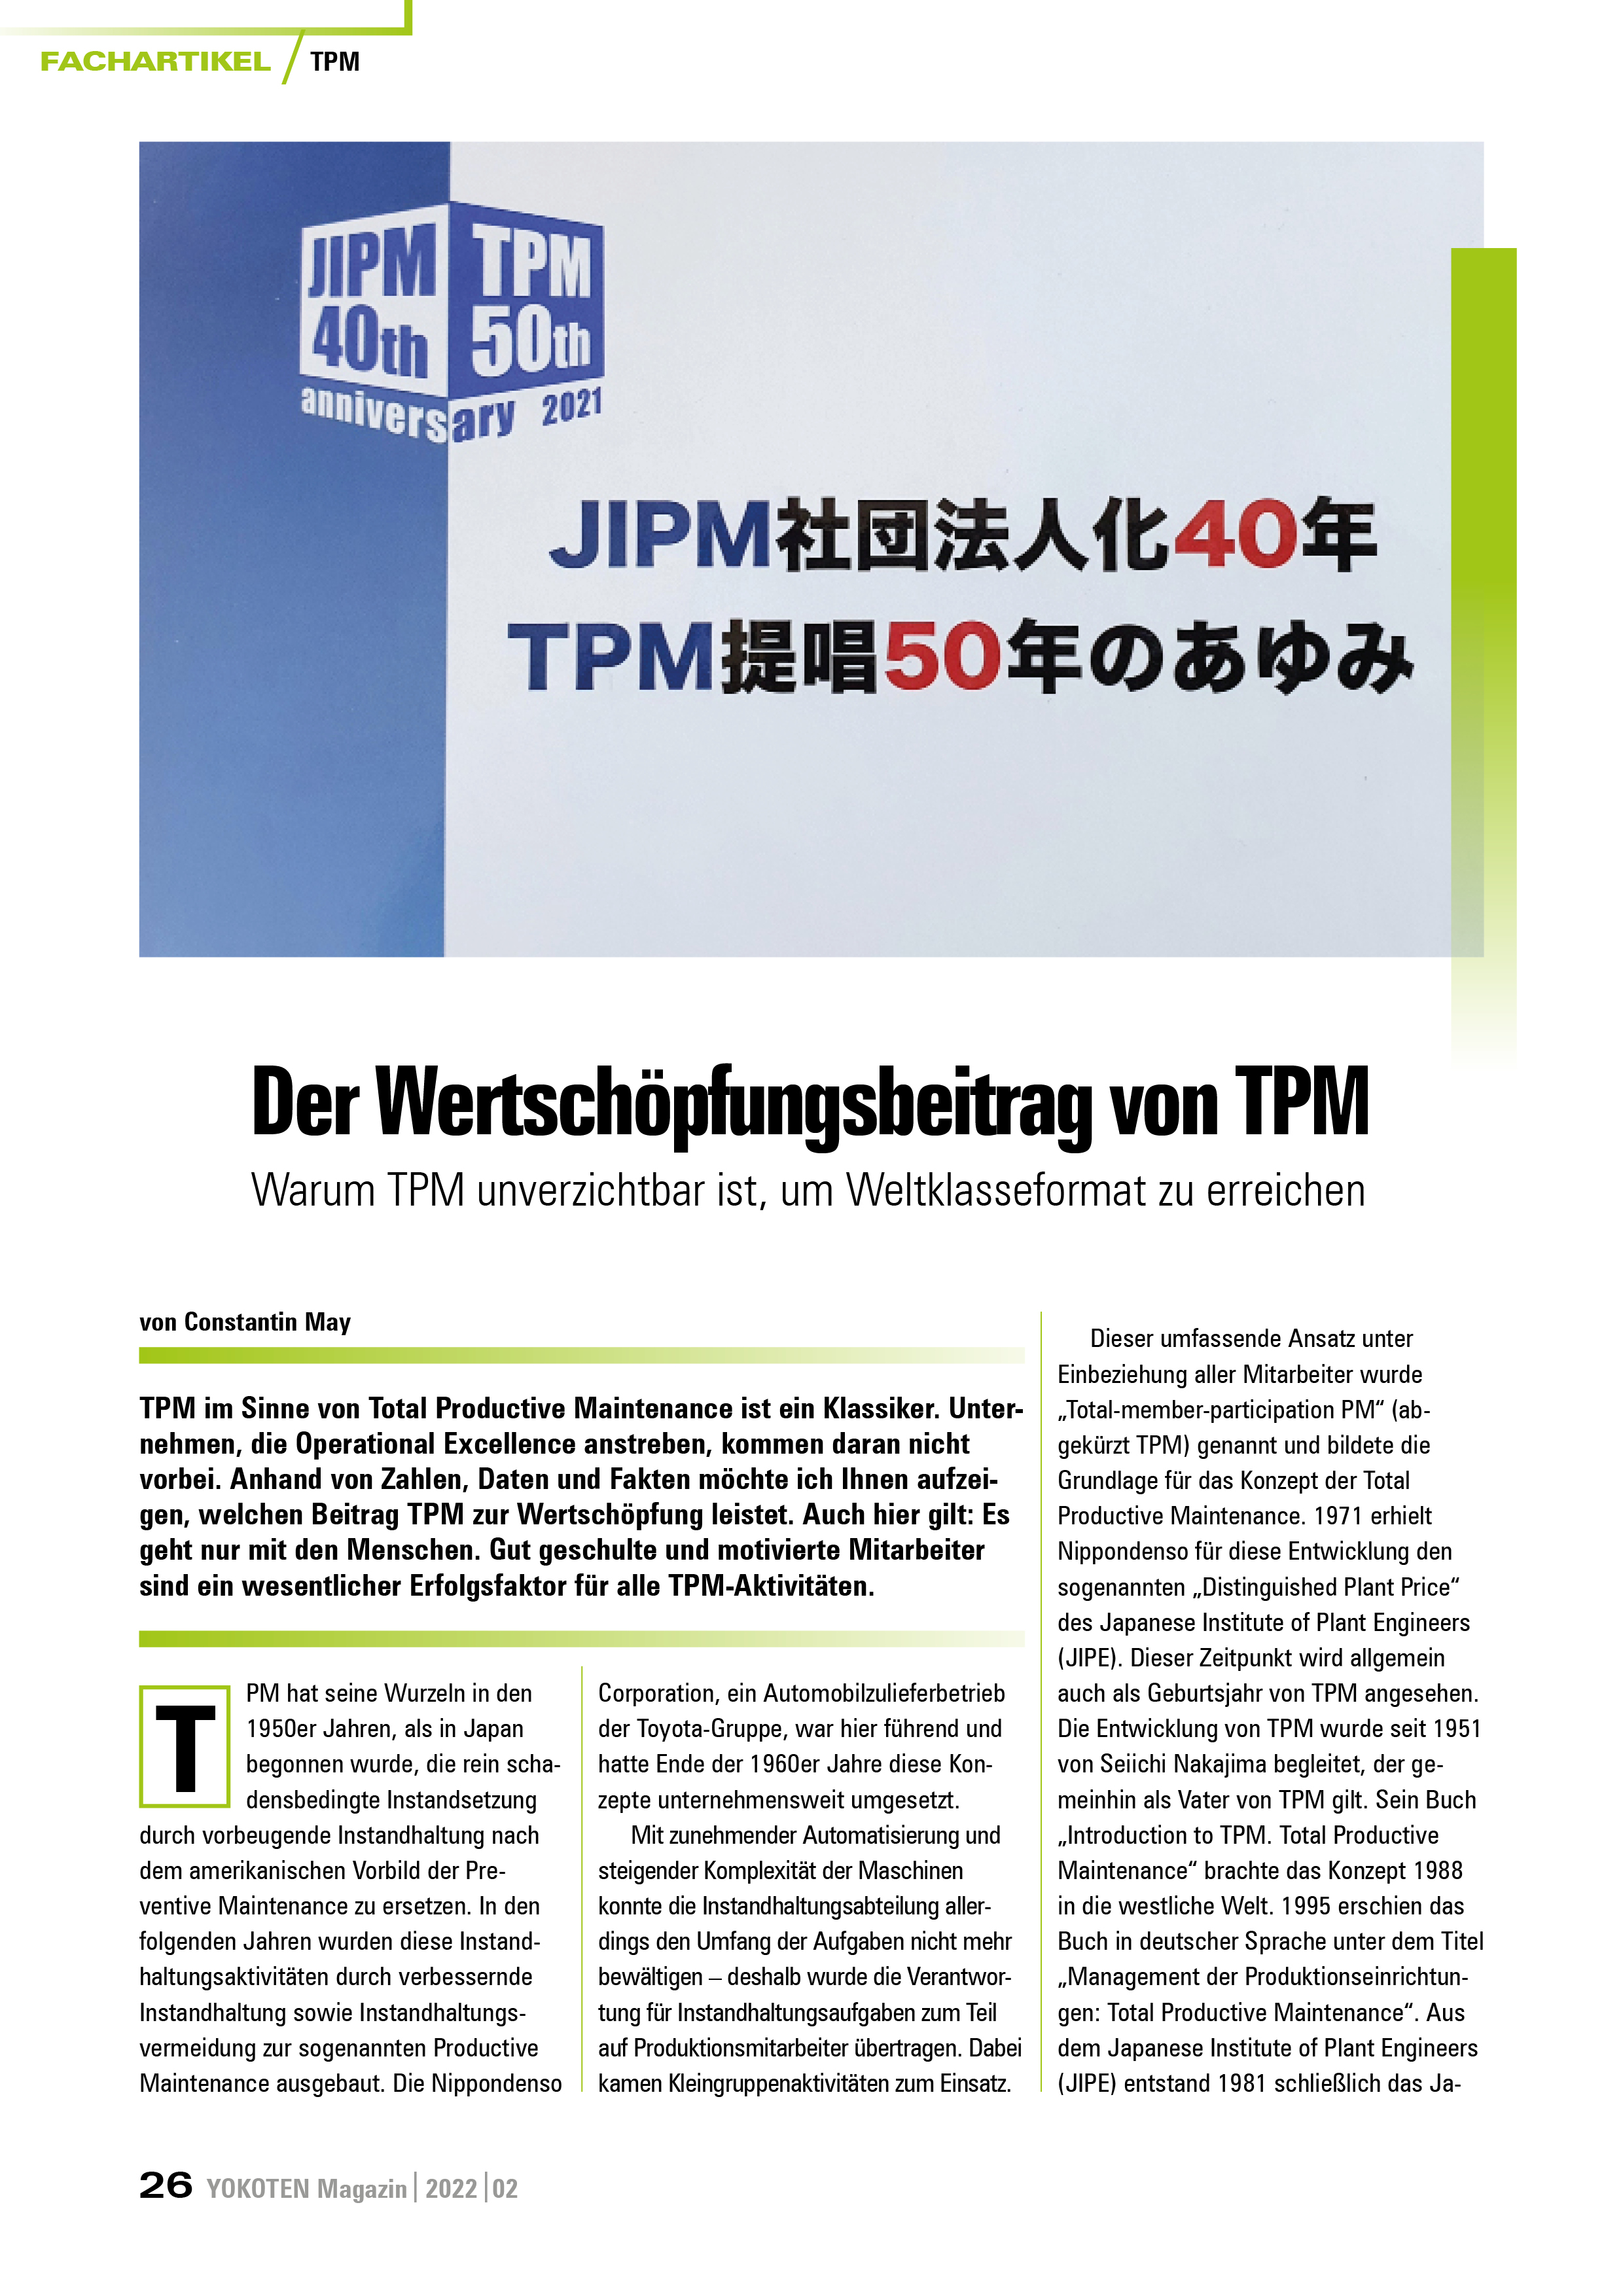 YOKOTEN-Artikel: Der Wertschöpfungsbeitrag von TPM